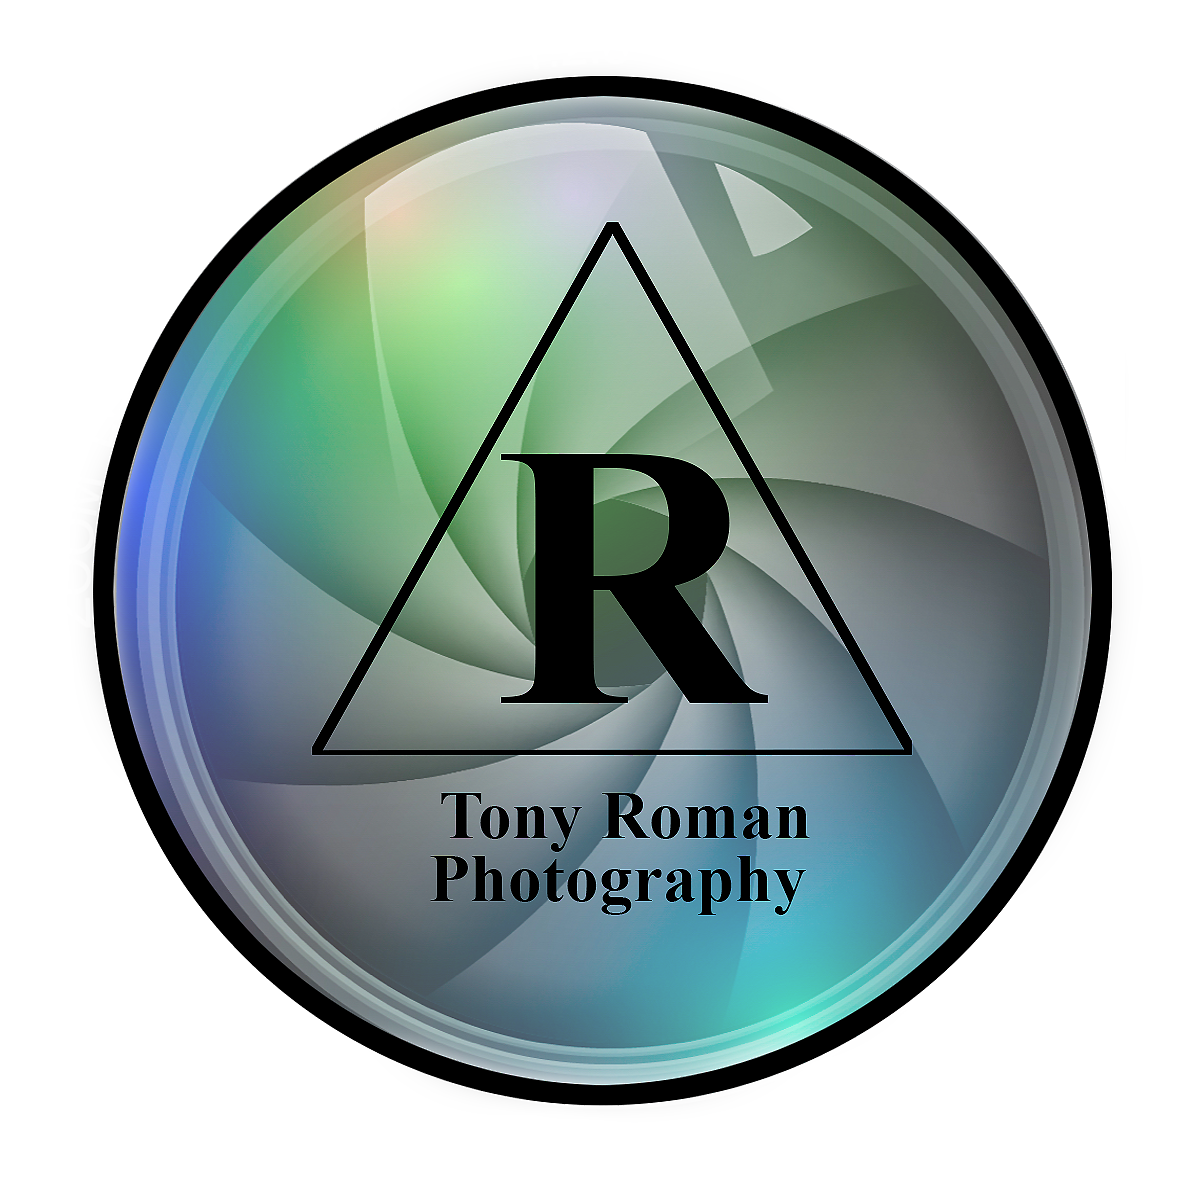 Tony Roman Photography